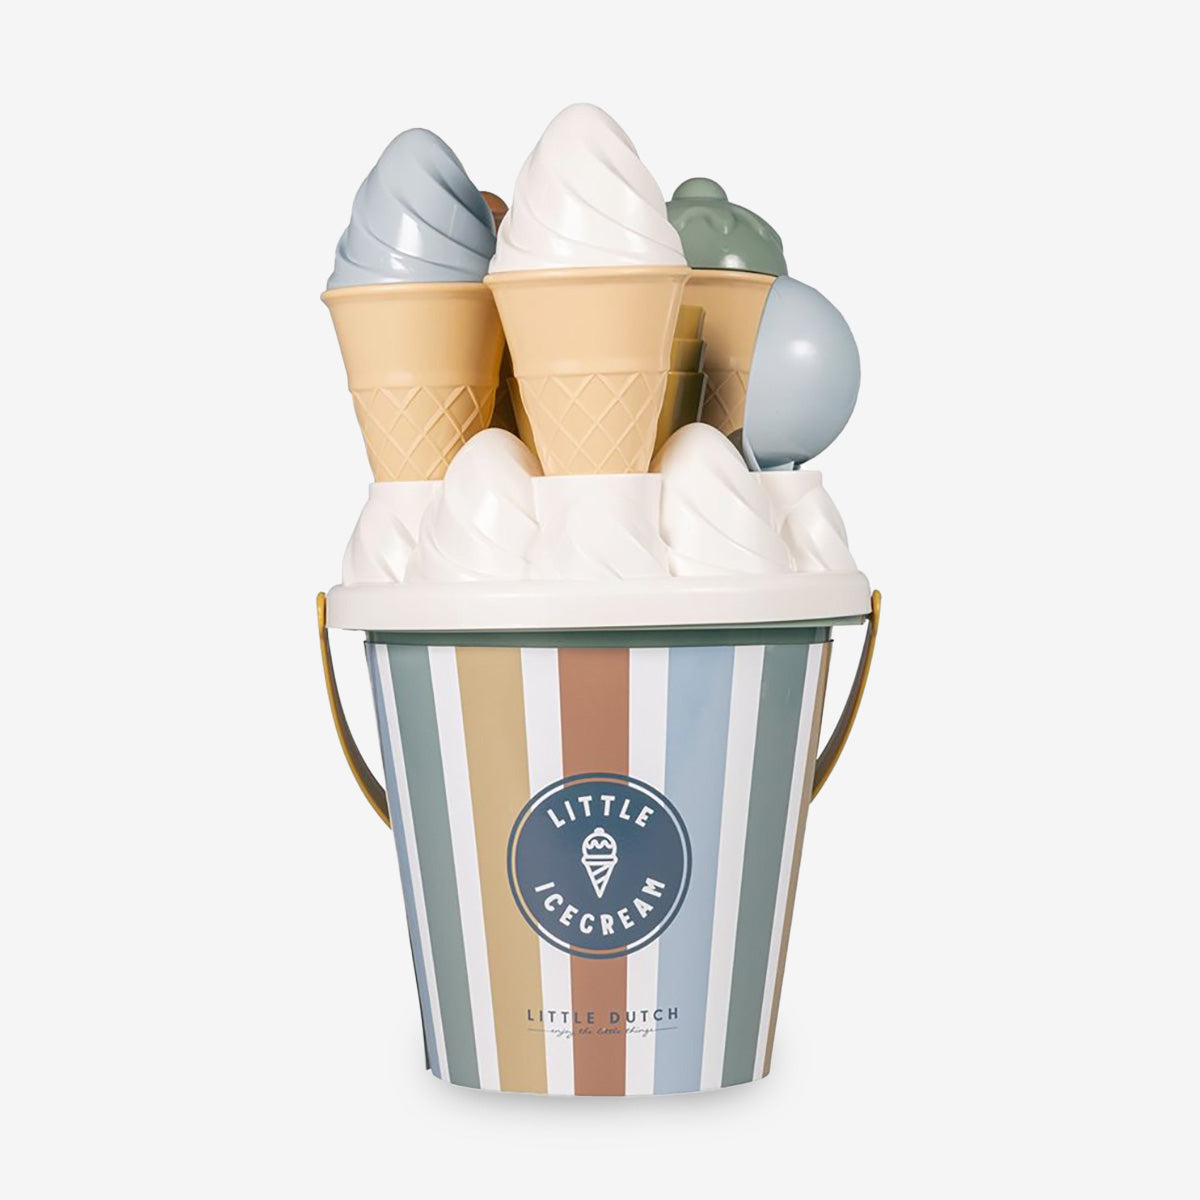 Little Dutch Ice Cream Beach Bucket Set - Vintage